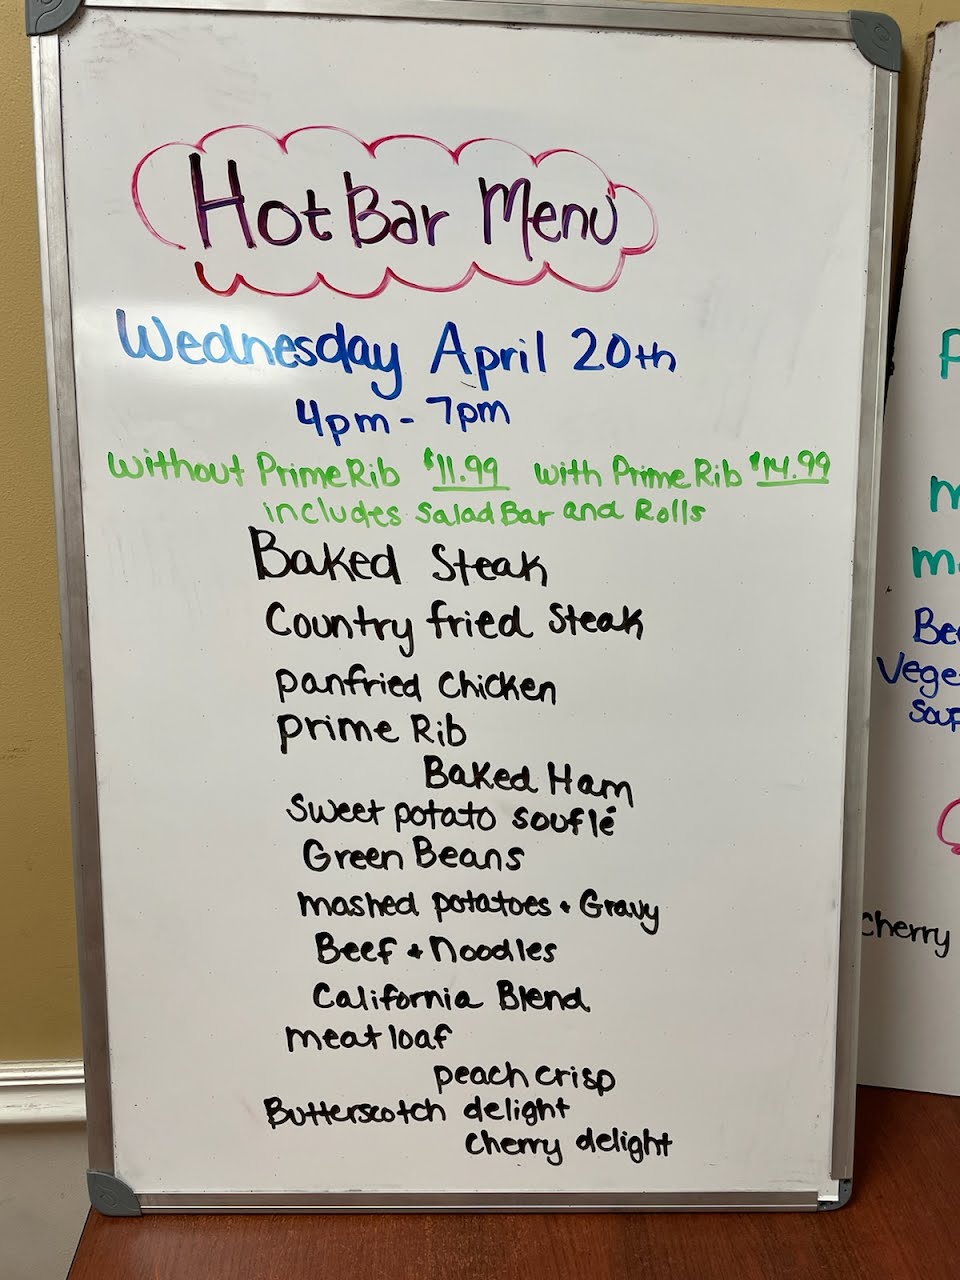 4/20 Wednesday Hot Bar Buffet